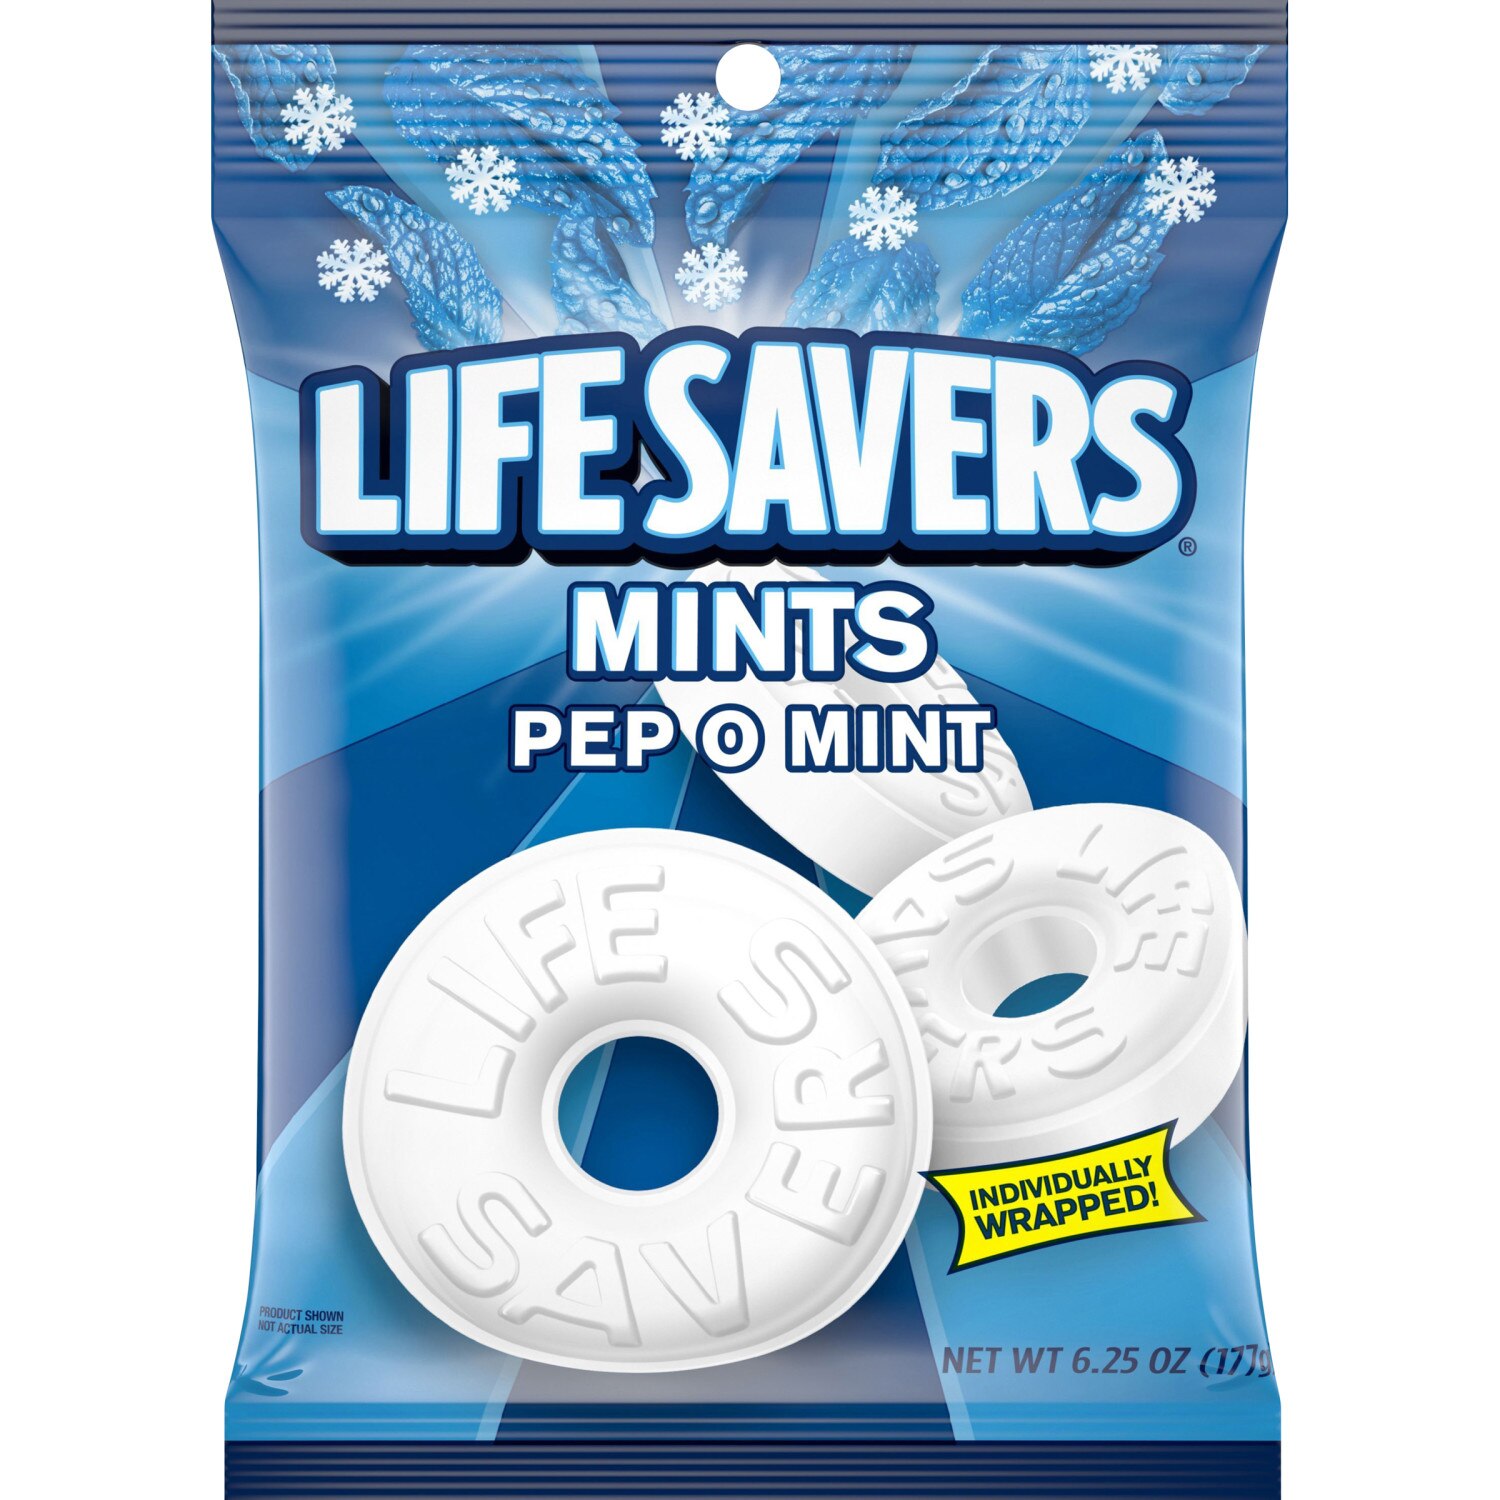 LIFE SAVERS Pep O Mint Candy Bag, 6.25 OZ